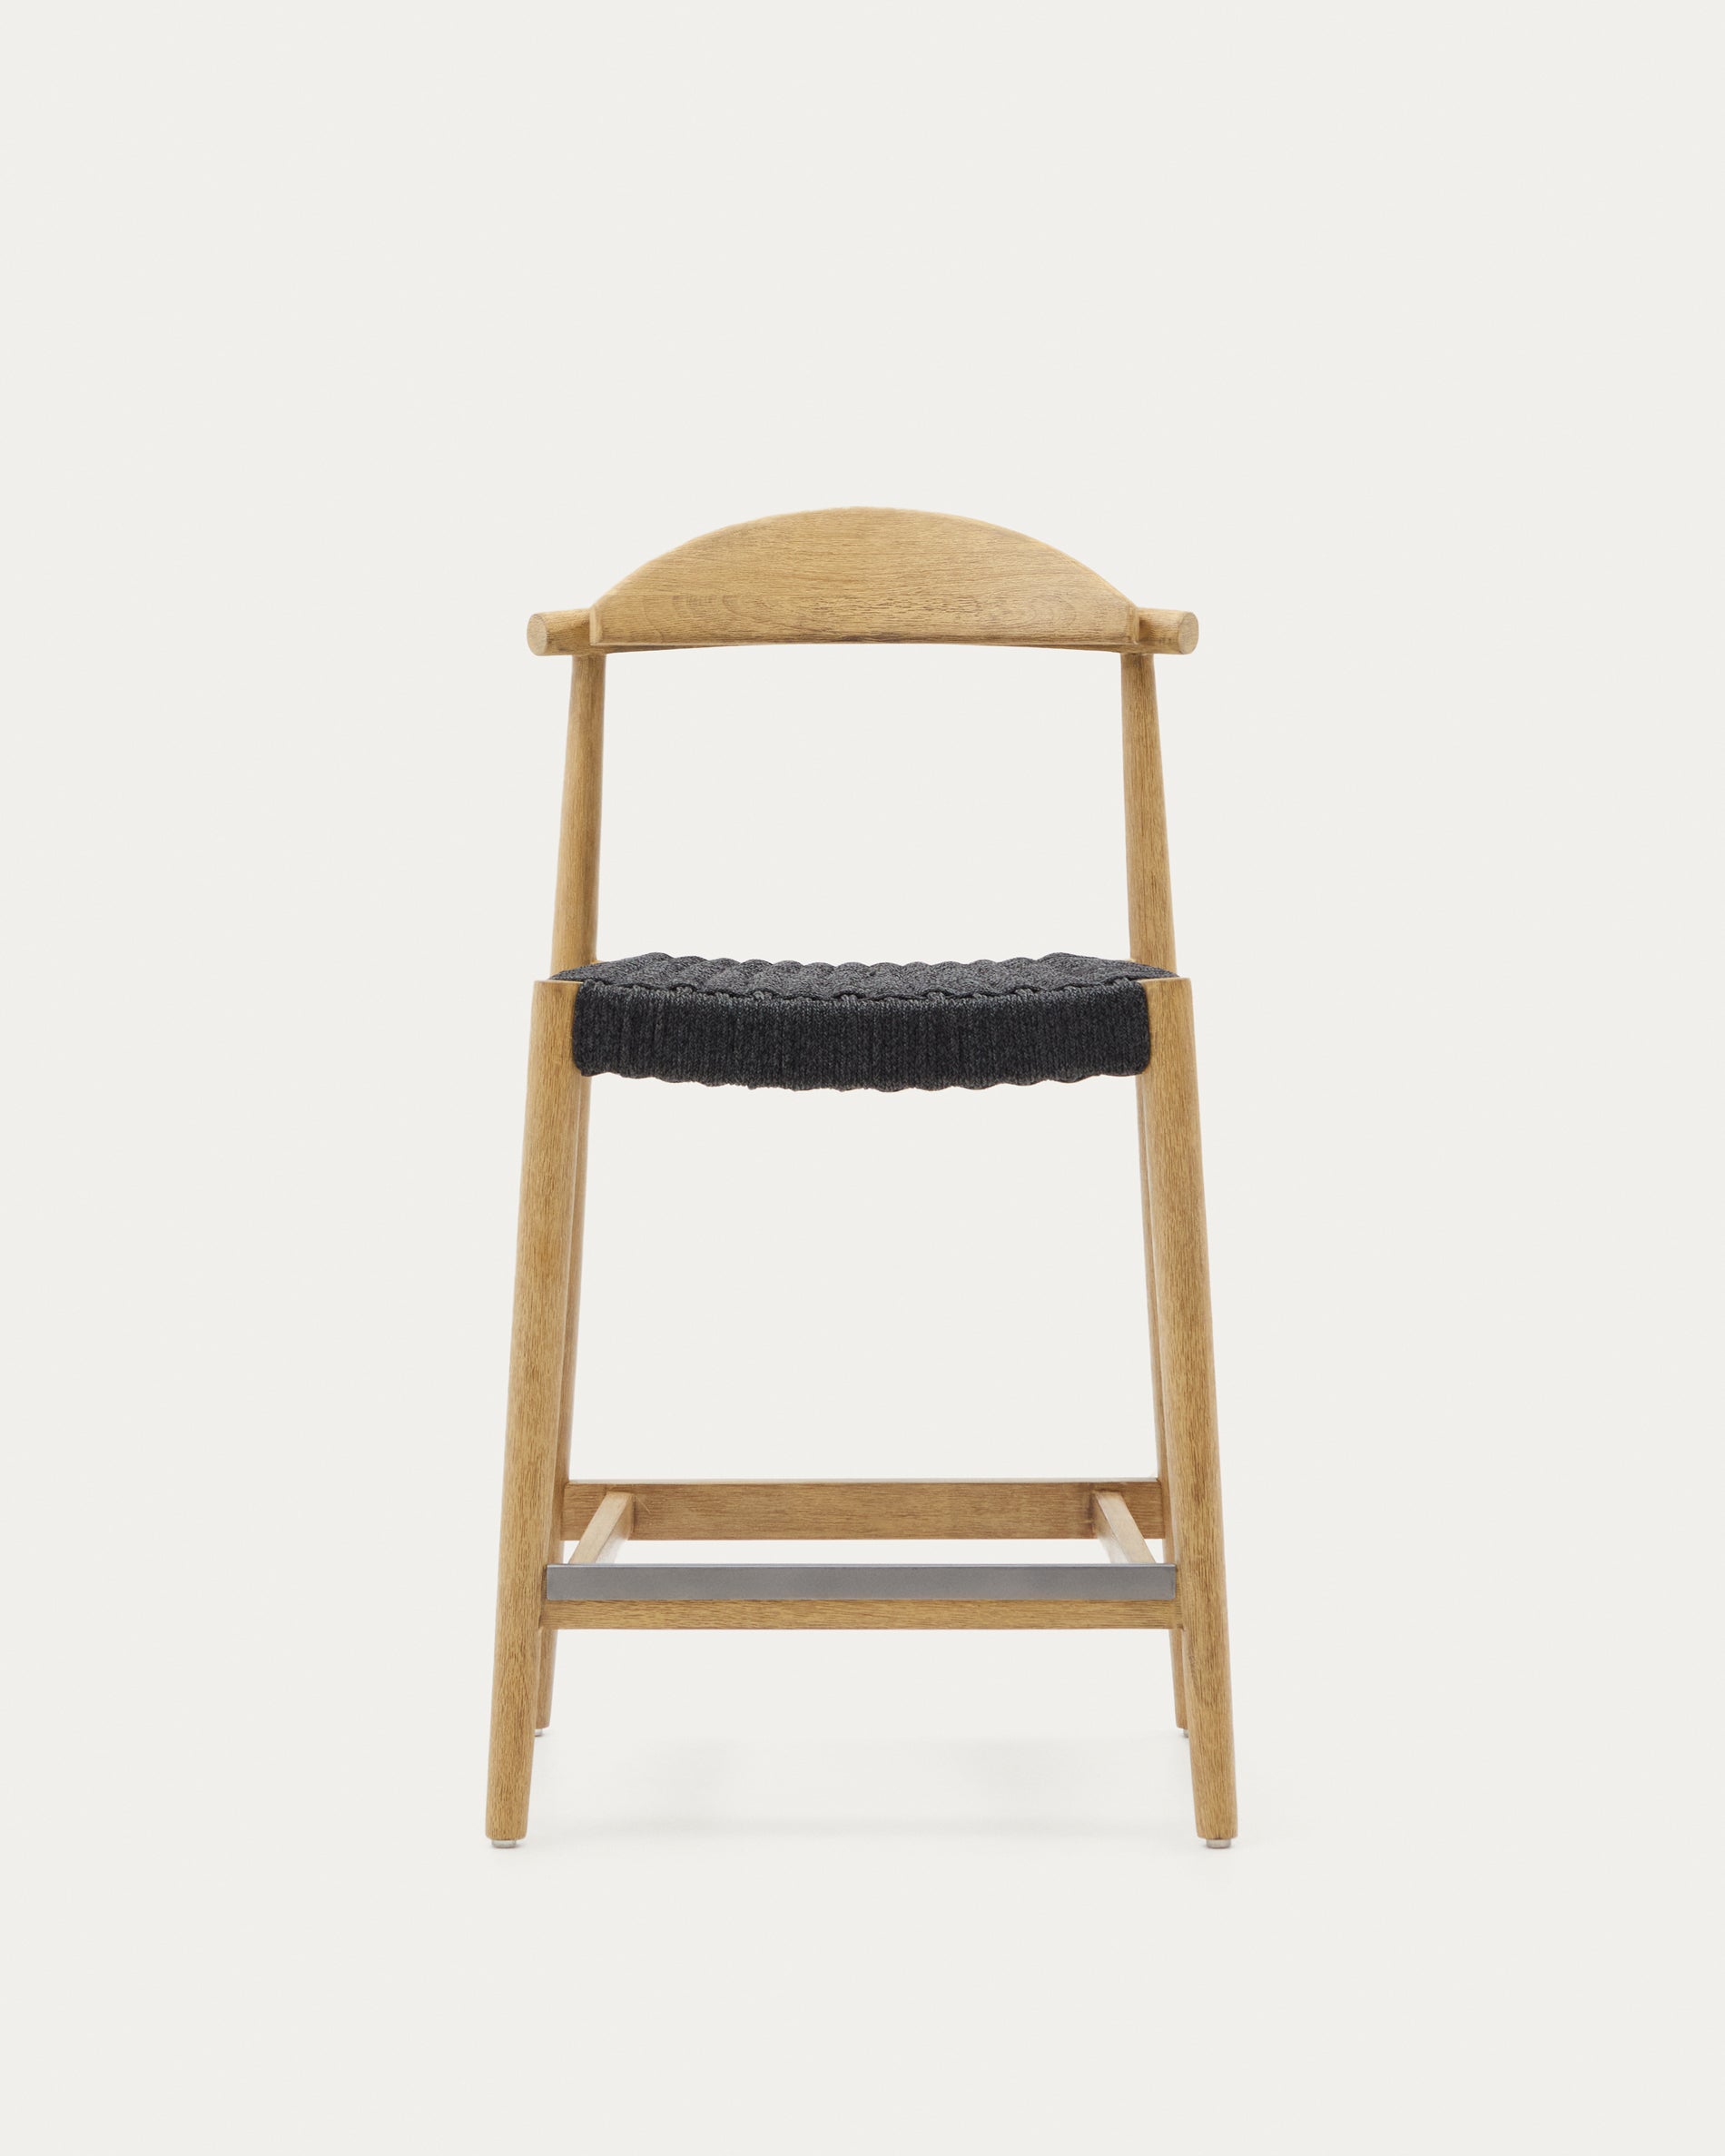 Nina szék, szilárd akácfa anyagból készült, természetes befejezéssel és fekete kötéllel, magassága 62 cm